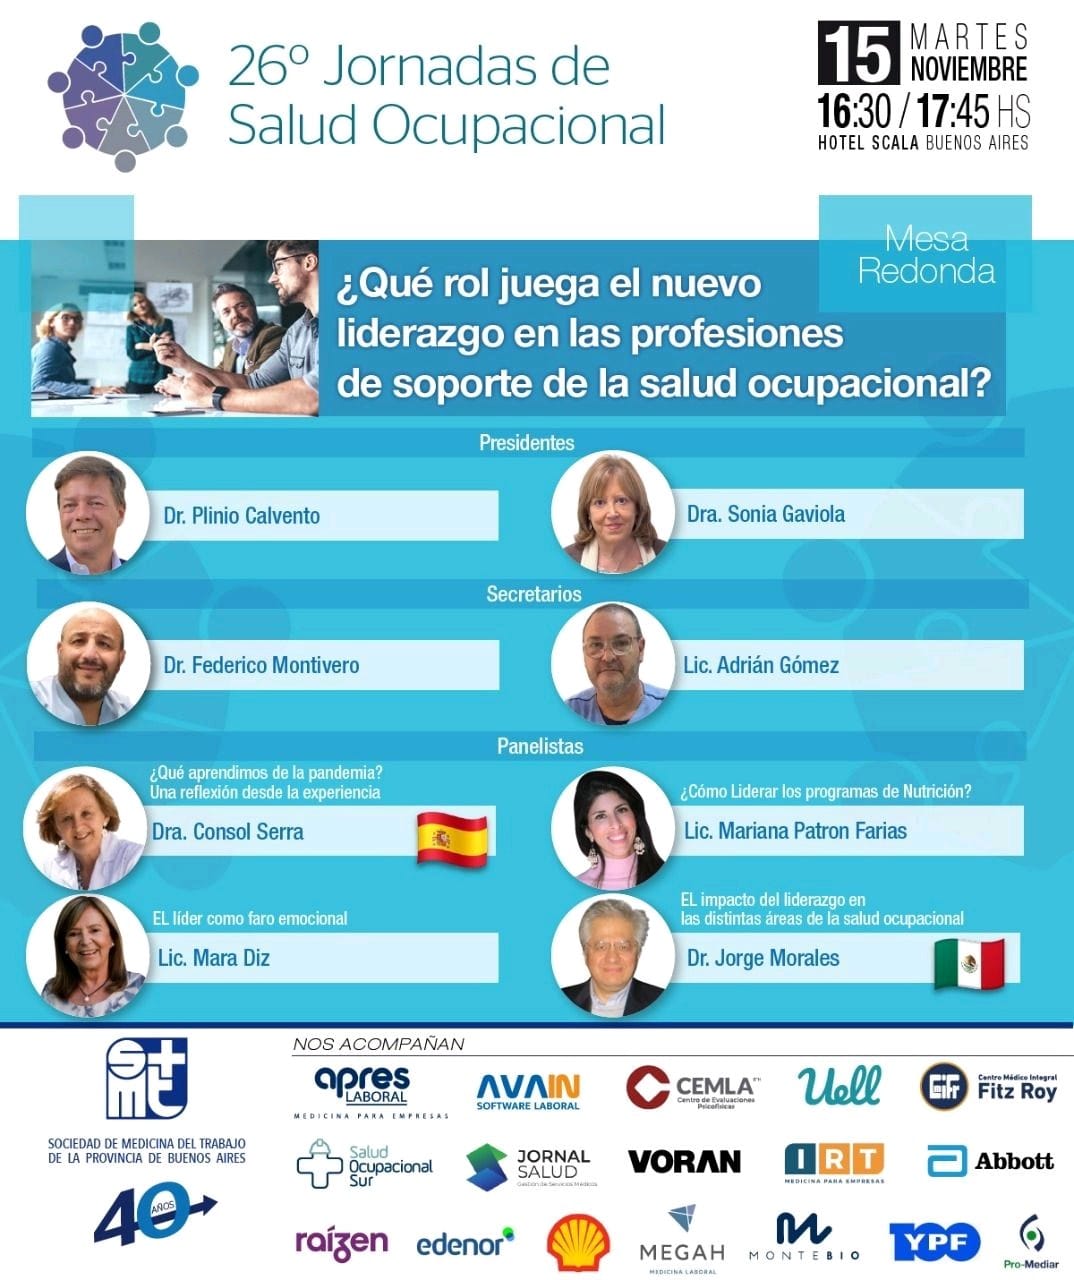 26 Jornada de Salud Ocupacional 15 de noviembre de 2022 en Buenos Aires.